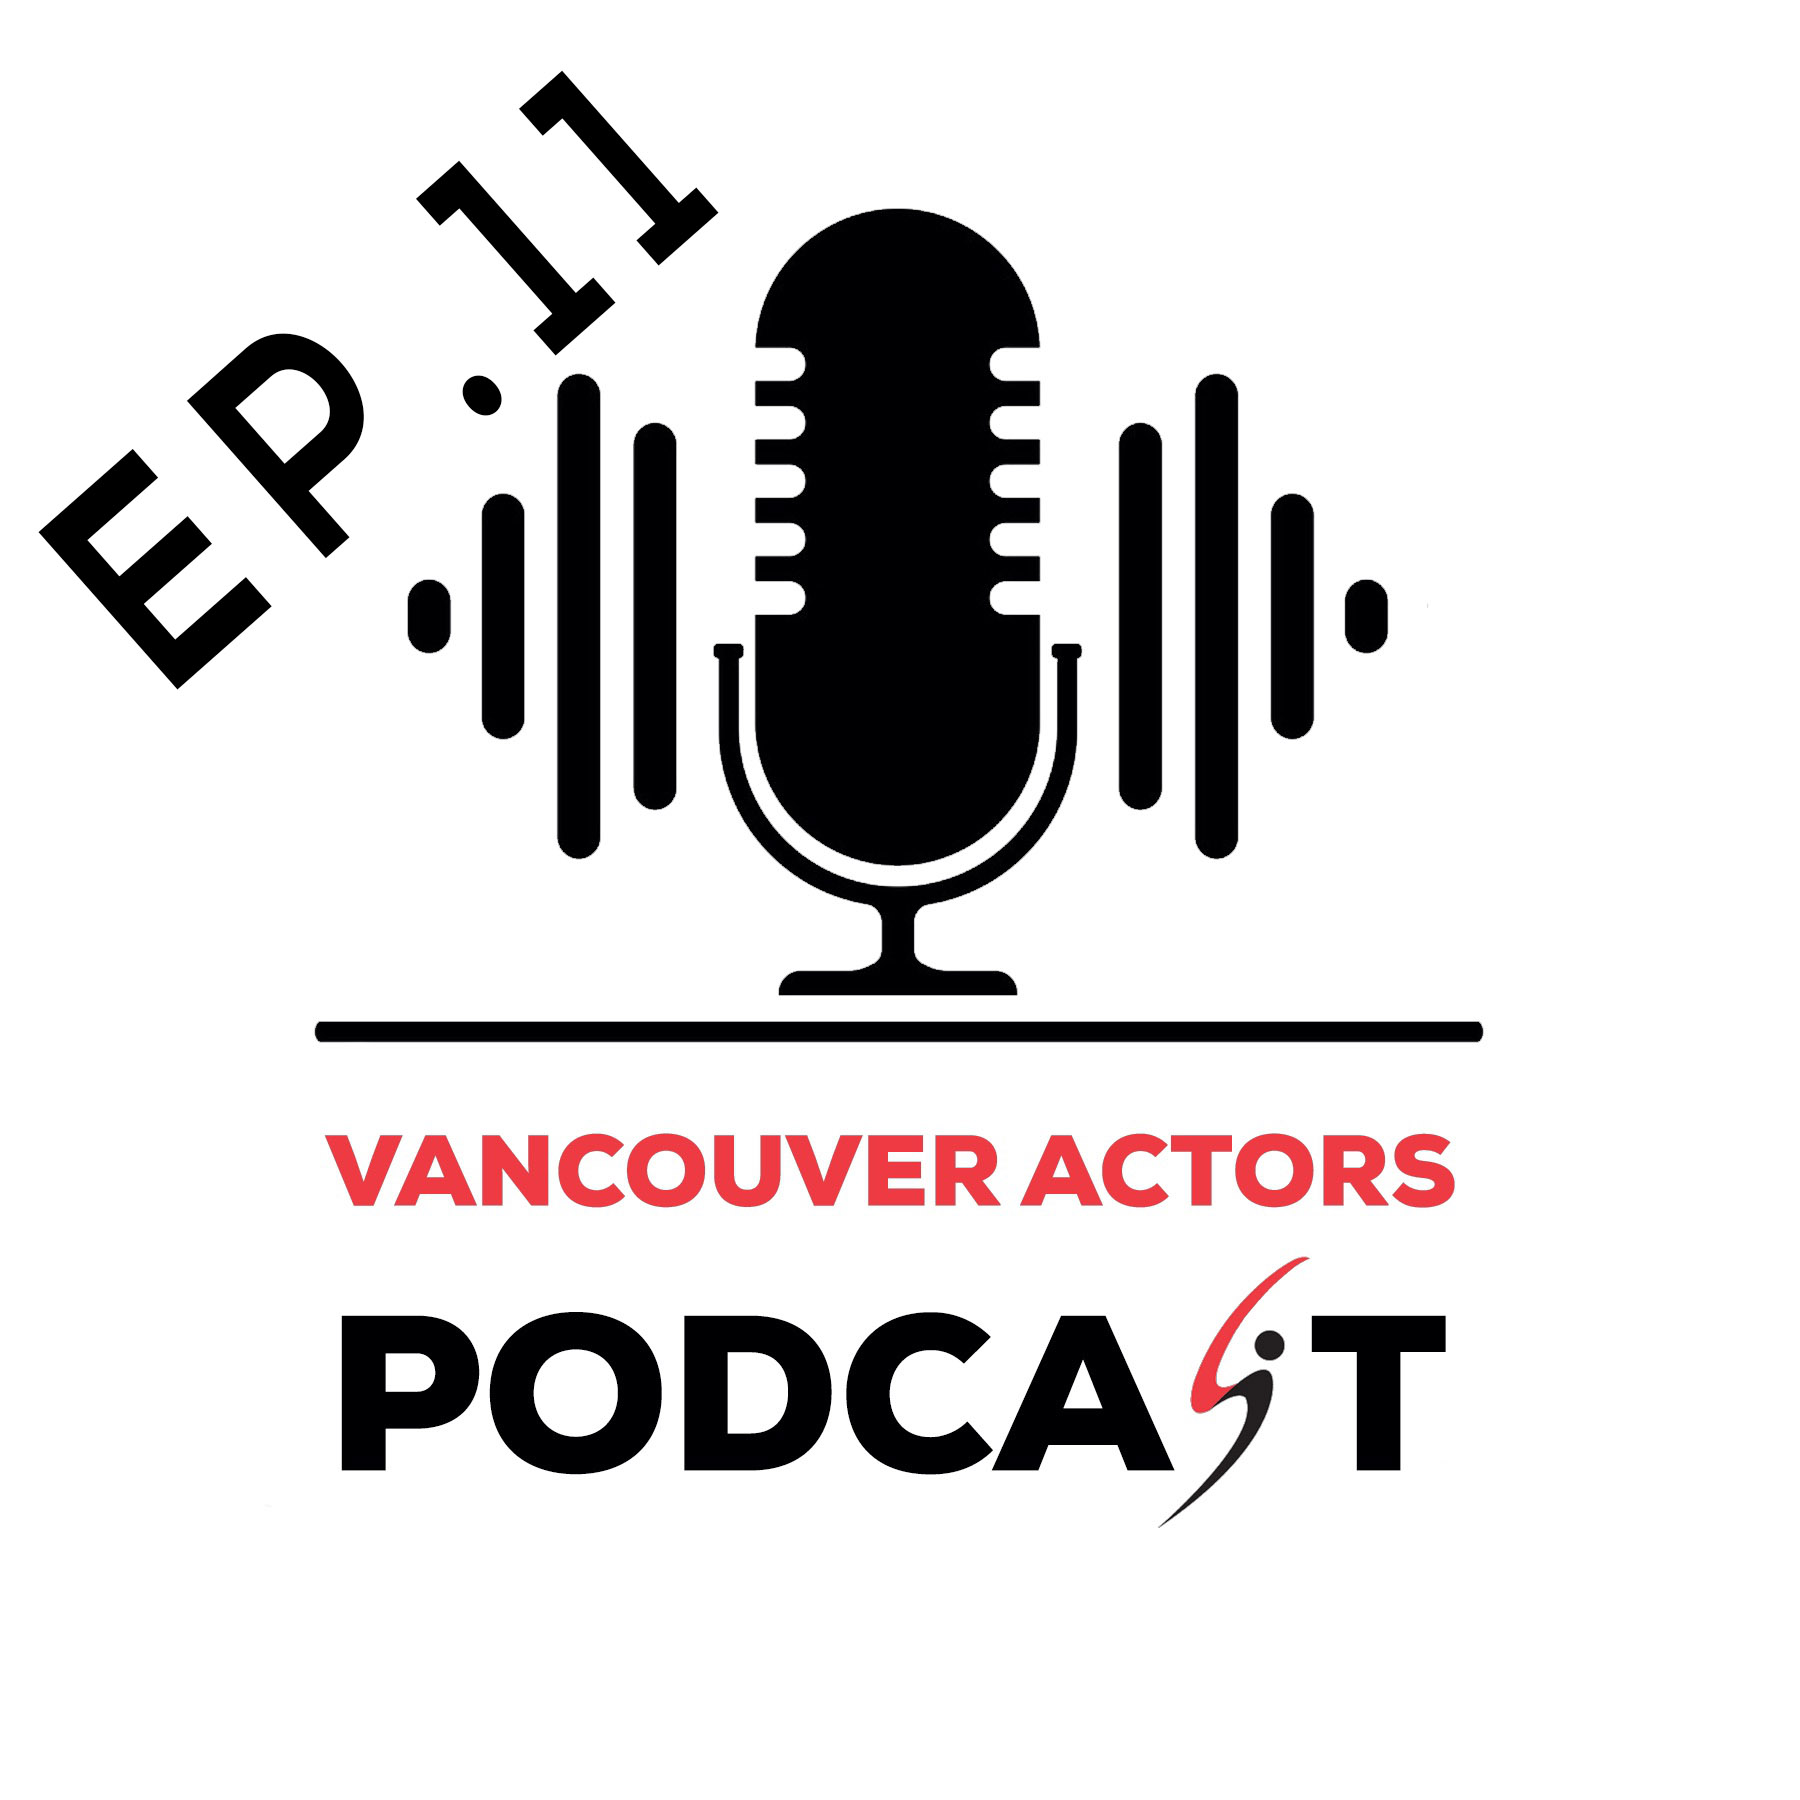 Vancouver Actors Podcast Michael Coleman Ep. 11